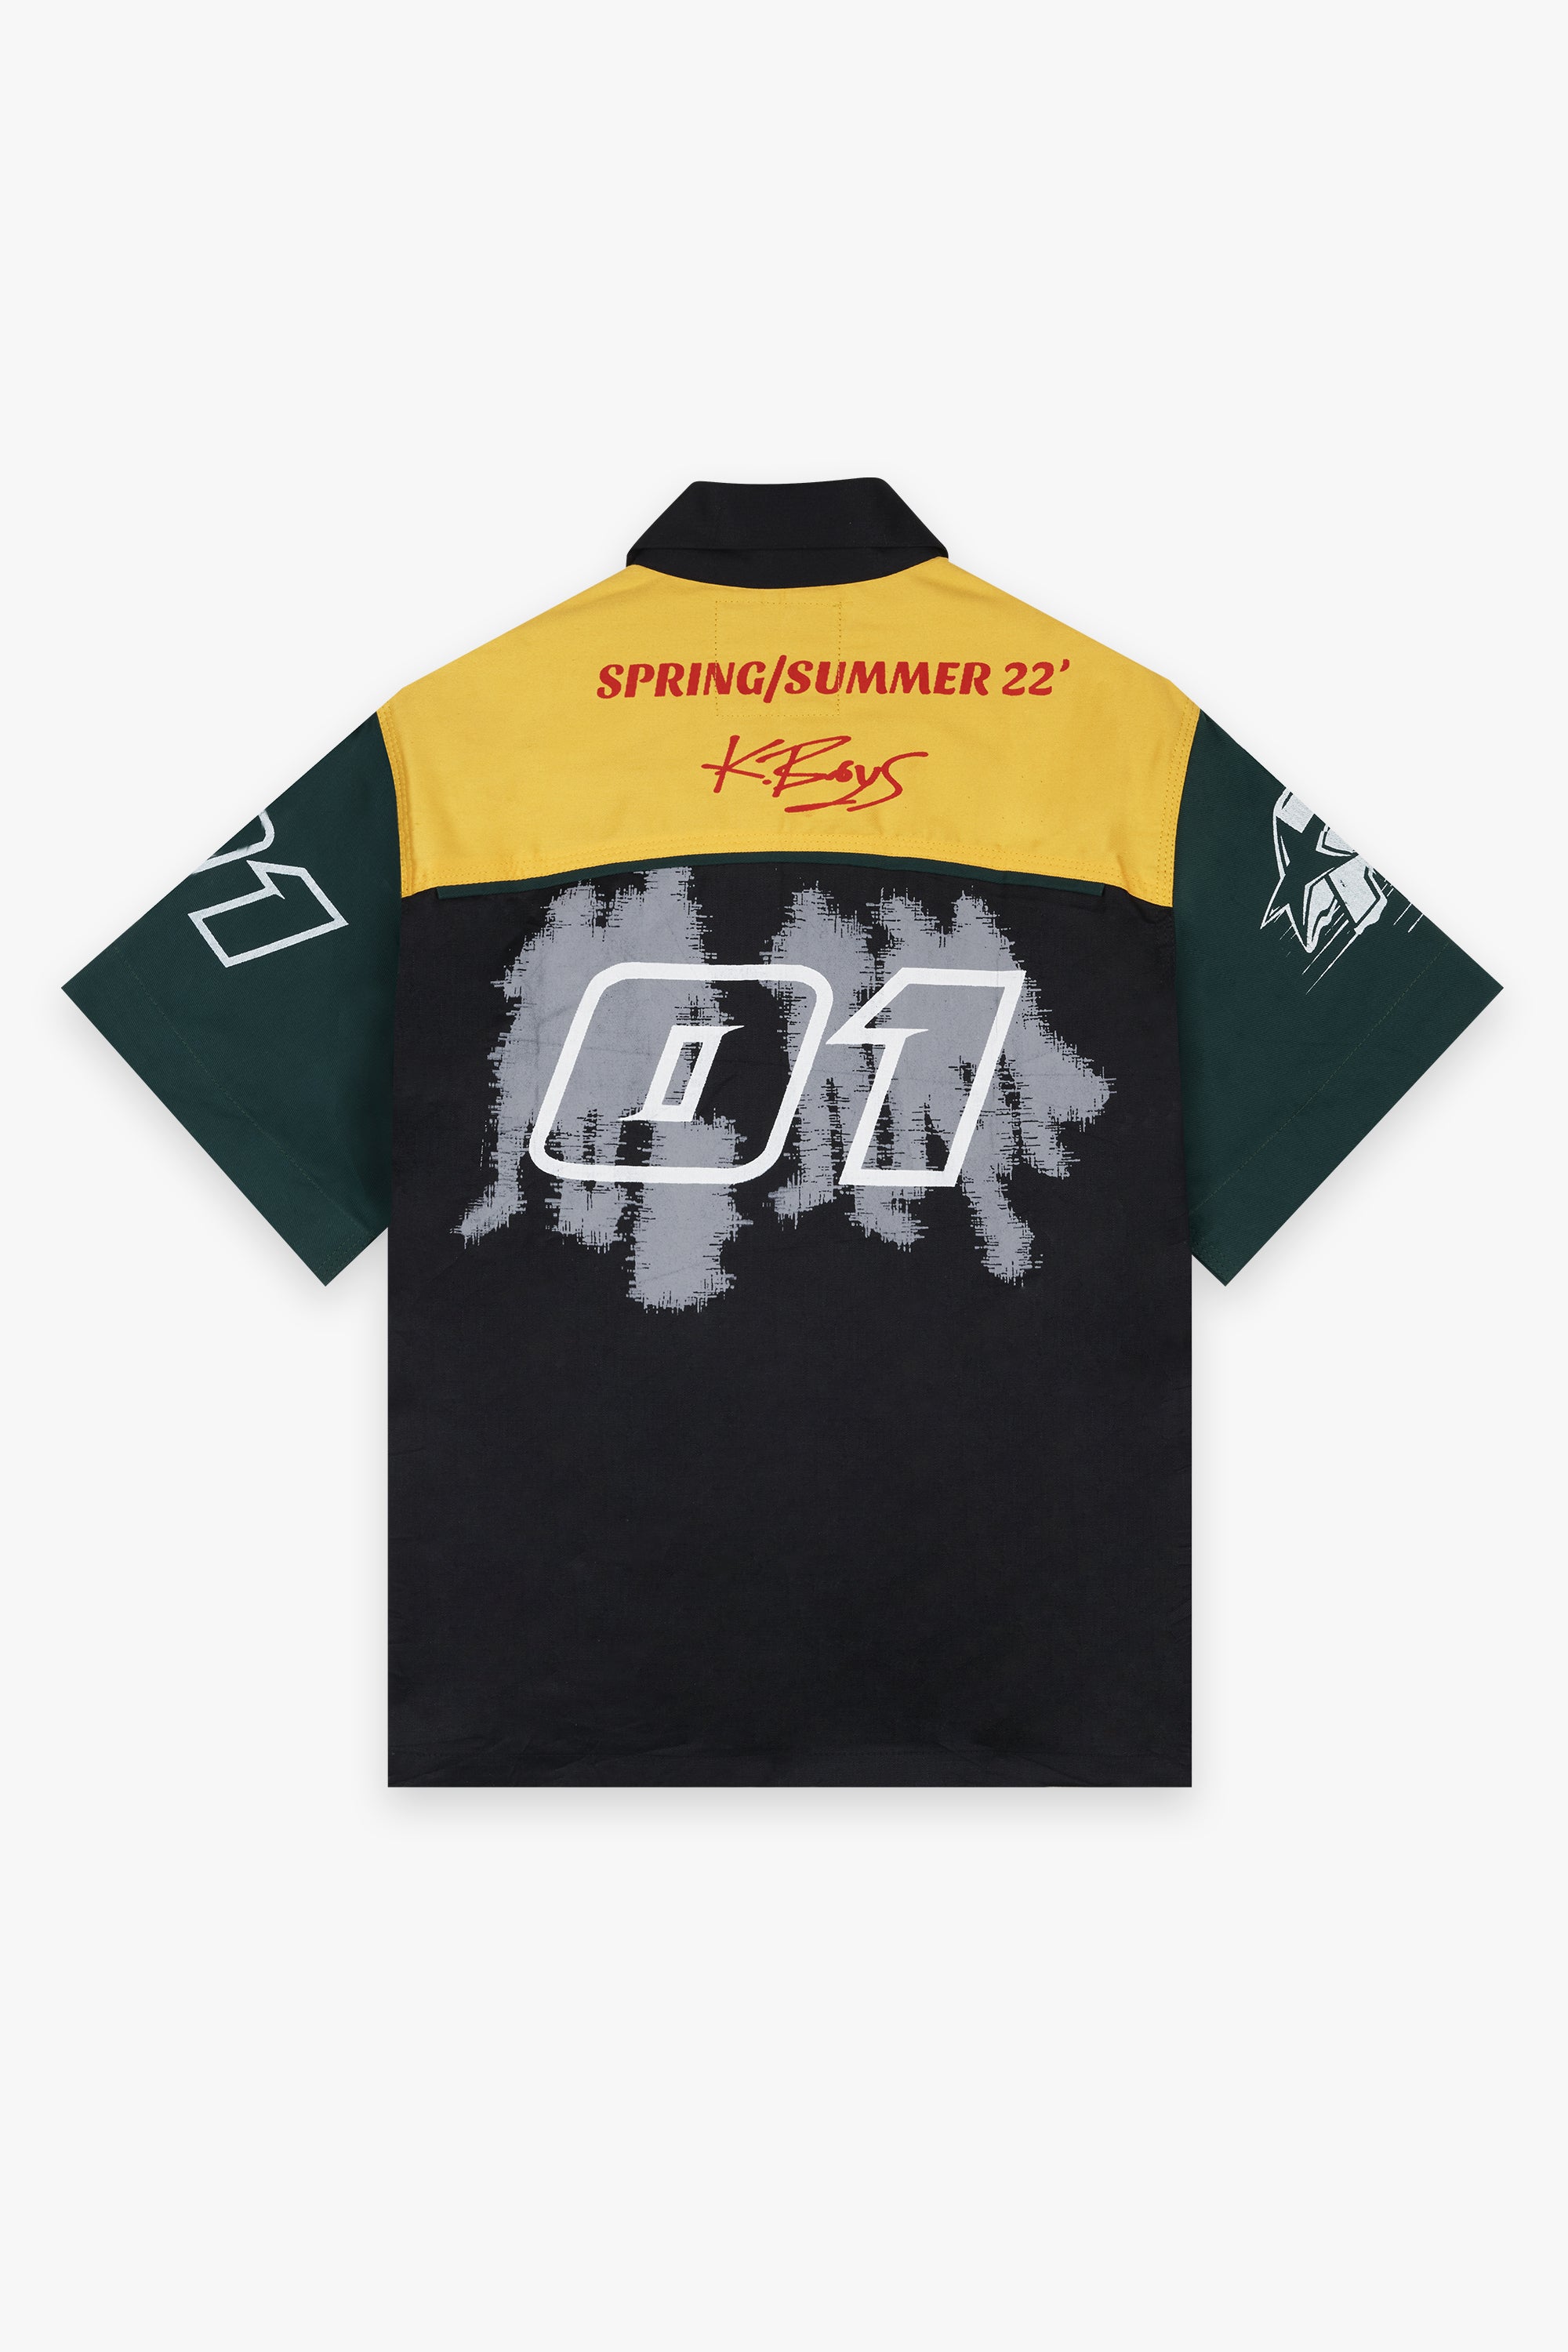 Quarter Zipper Racing Shirt